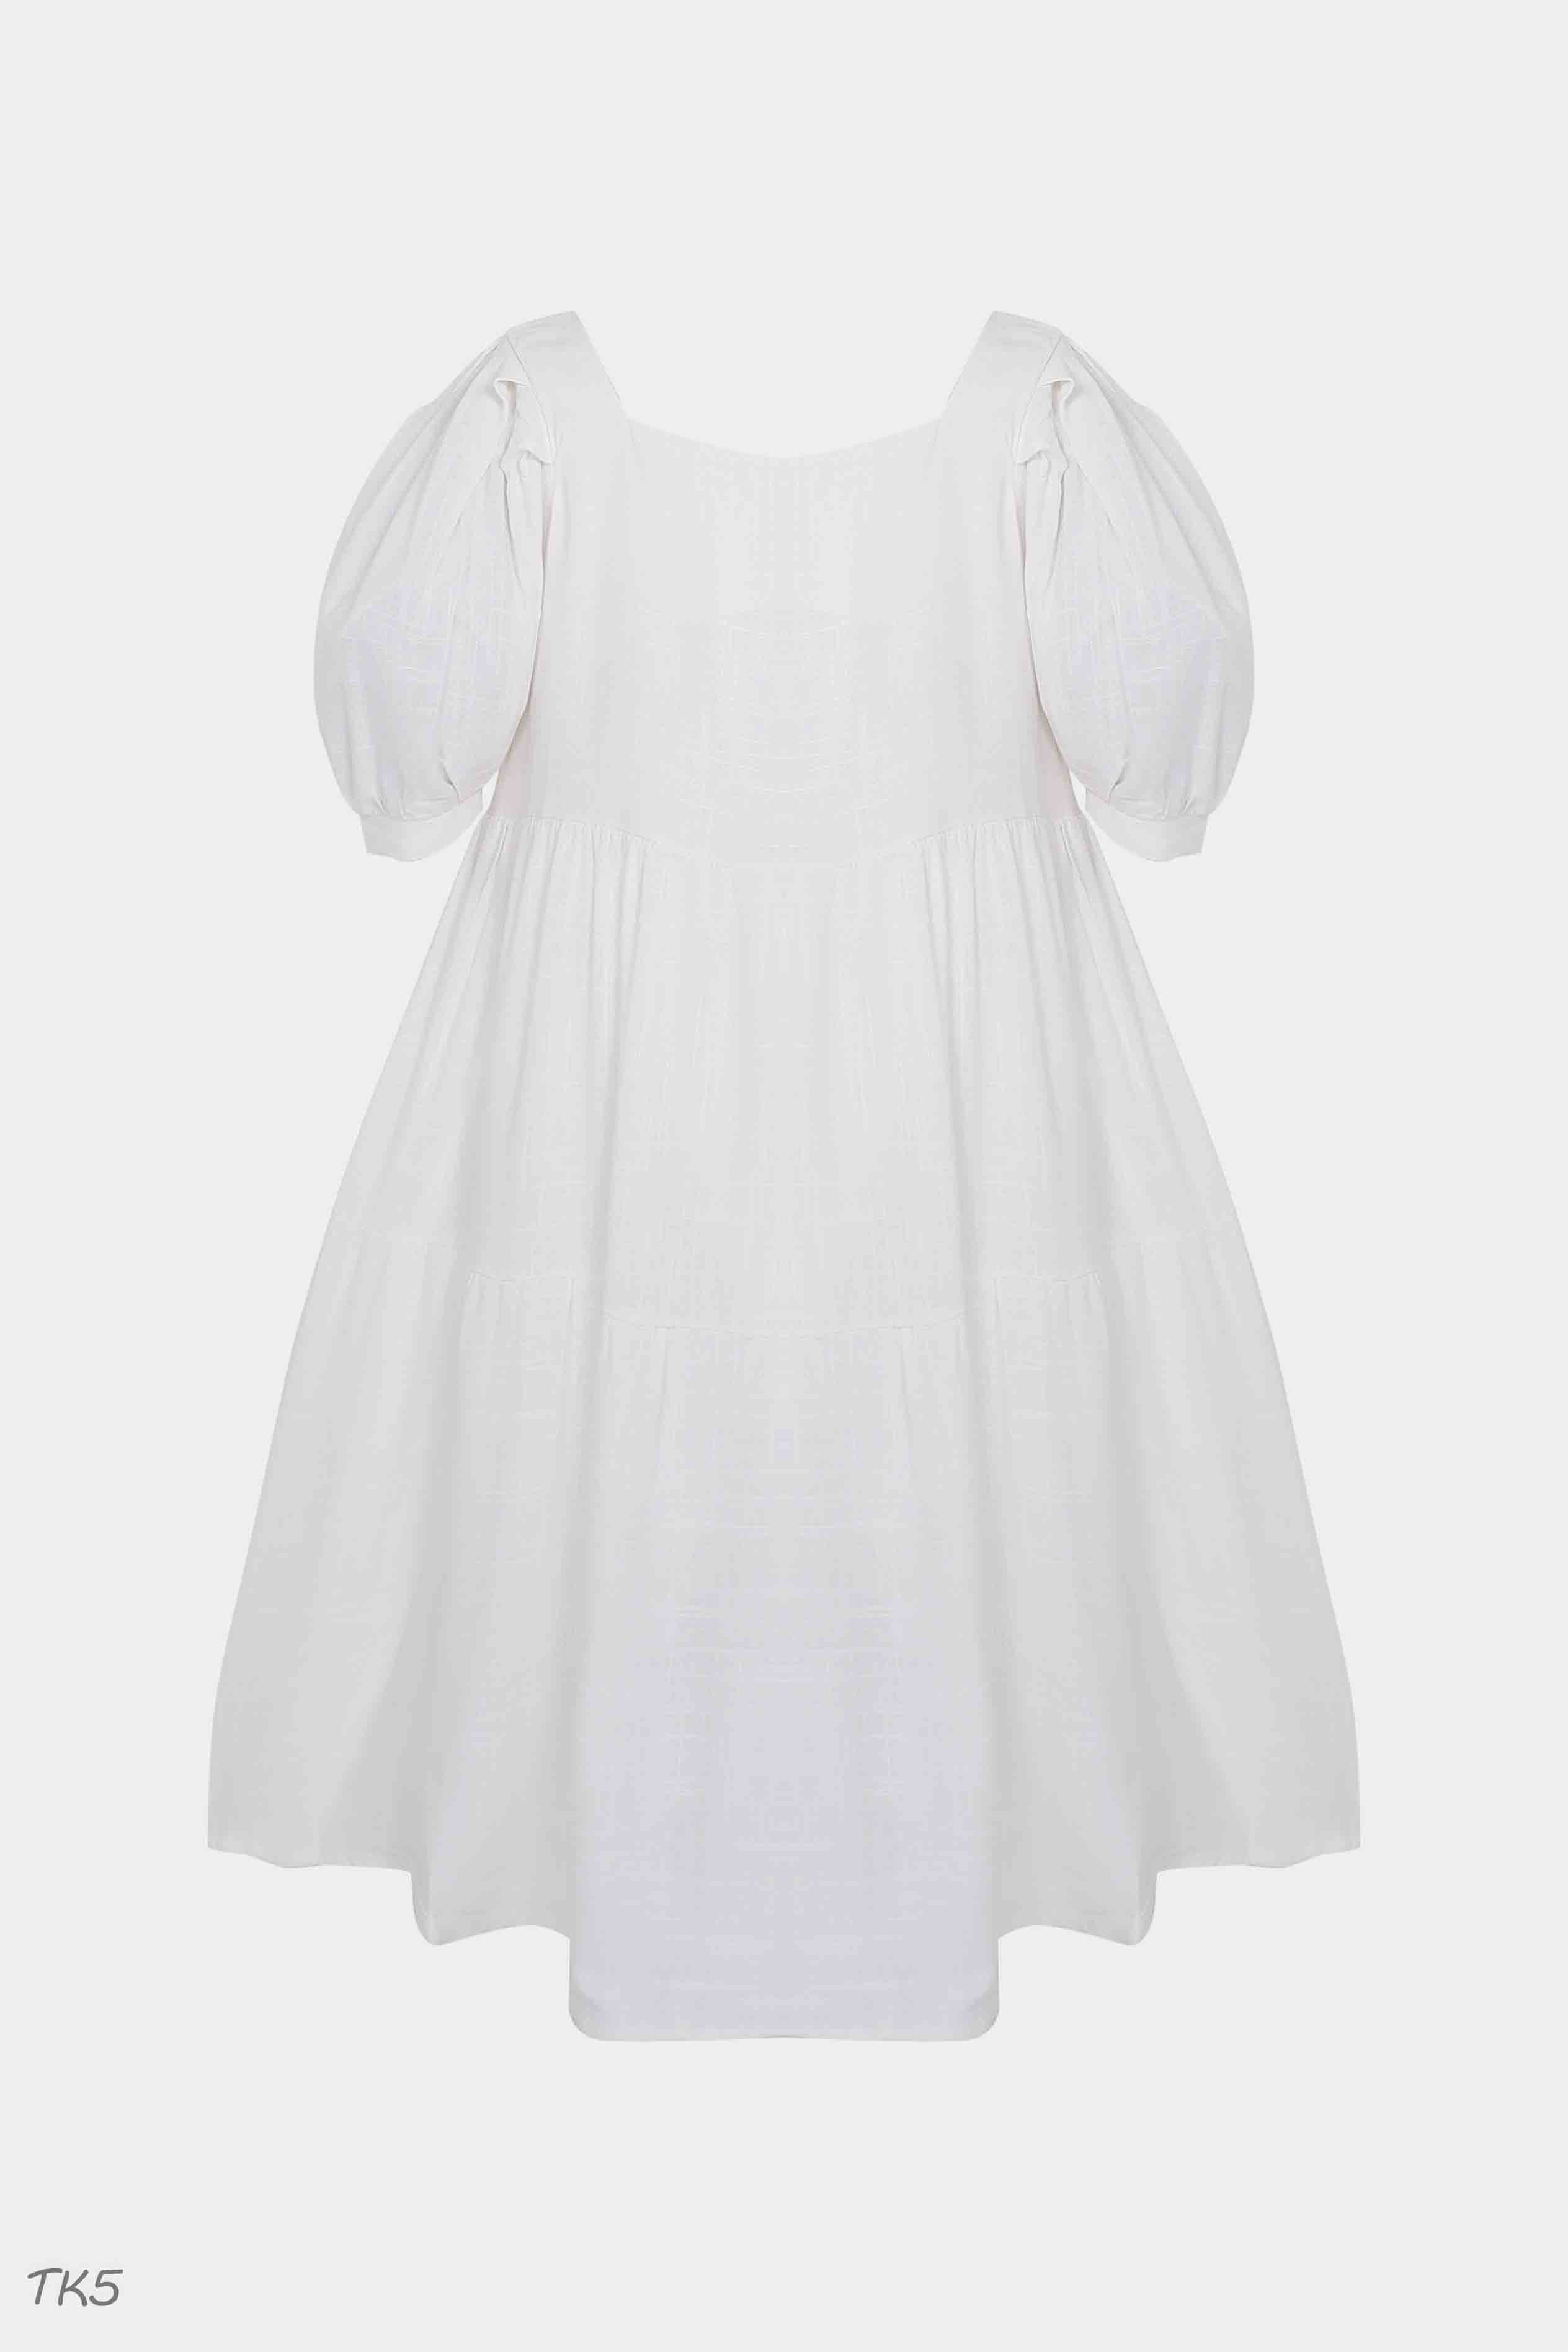 Váy babydoll  item thời trang được sao Hàn mê mệt hè năm nay